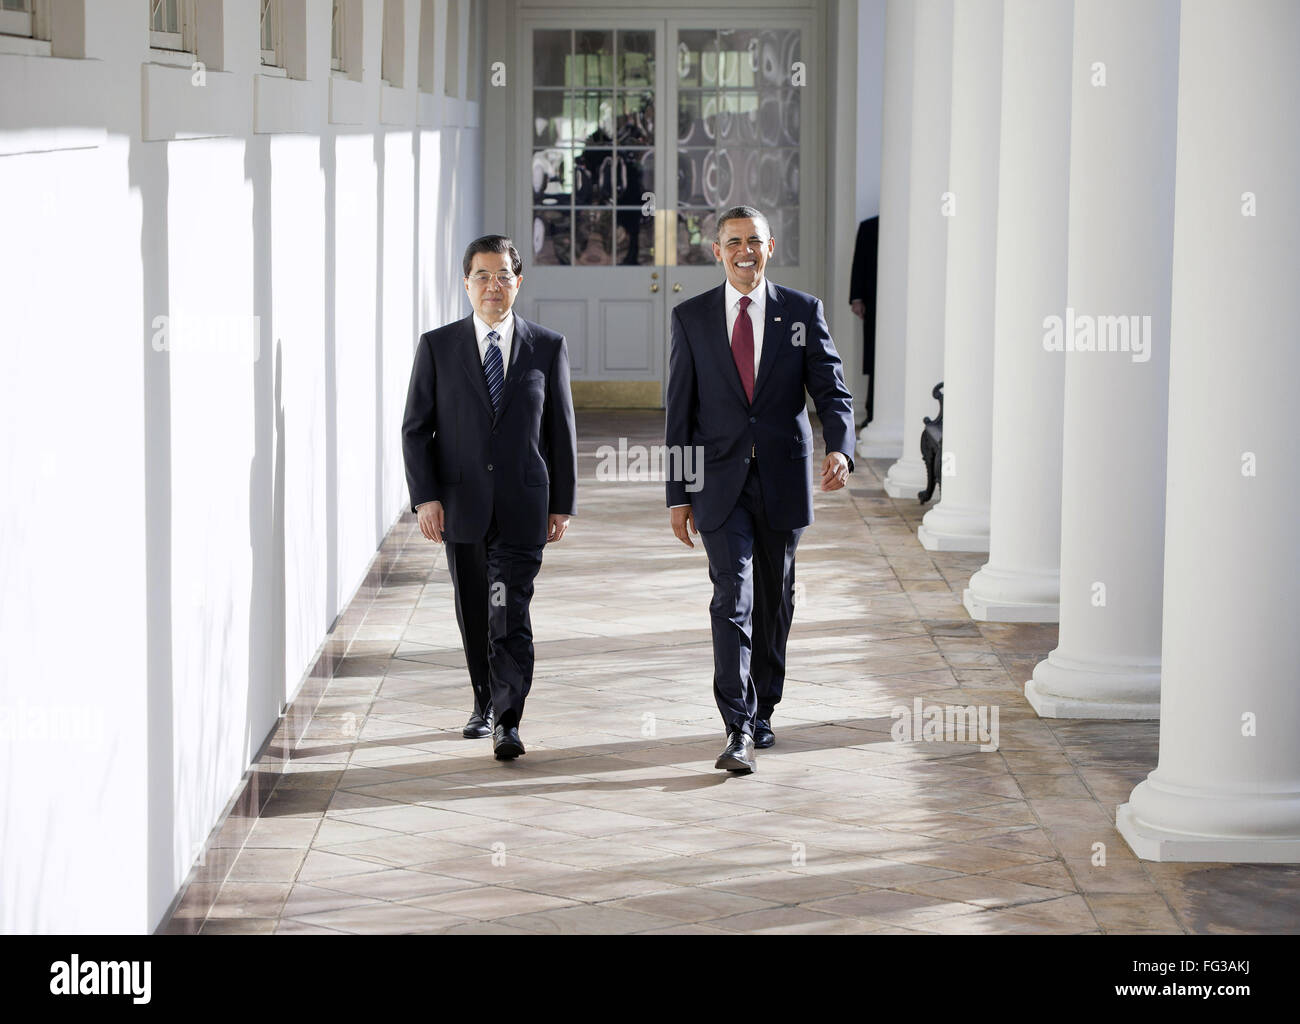 HU E OBAMA, 2011. /NPresident Hu Jintao della Cina e il Presidente Barack Obama alla Casa Bianca di Washington, D.C. Fotografia, 19 gennaio 2011. Foto Stock